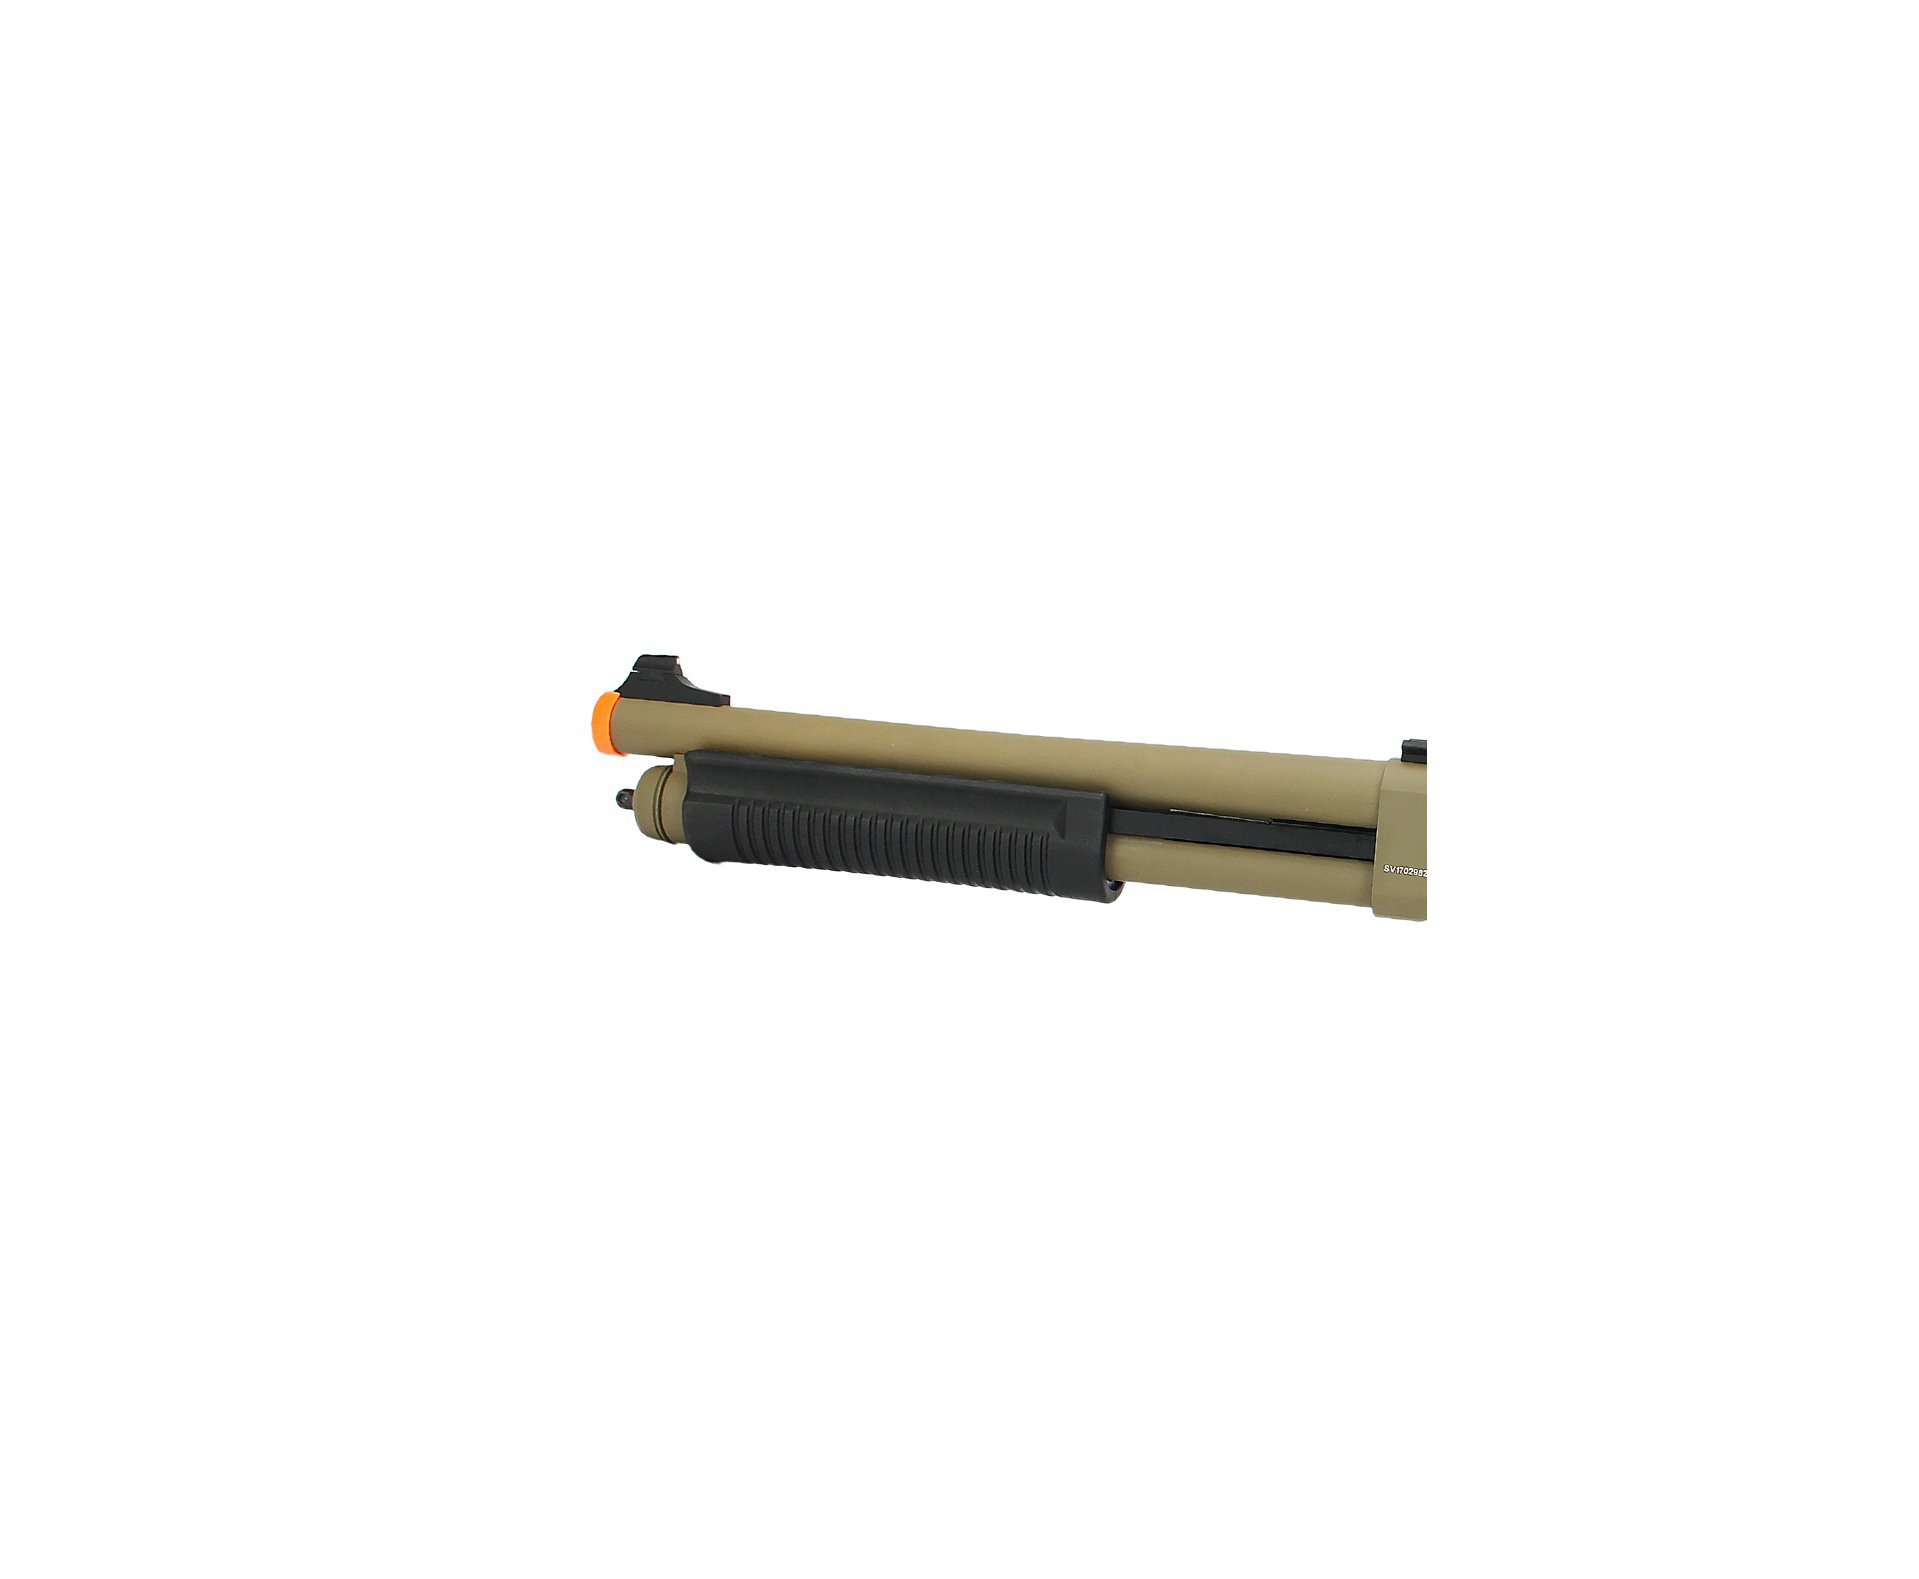 Escopeta Shotgun De Airsoft Full Metal Gbb Epg Velites G-iii Tan Cal 6mm V0006